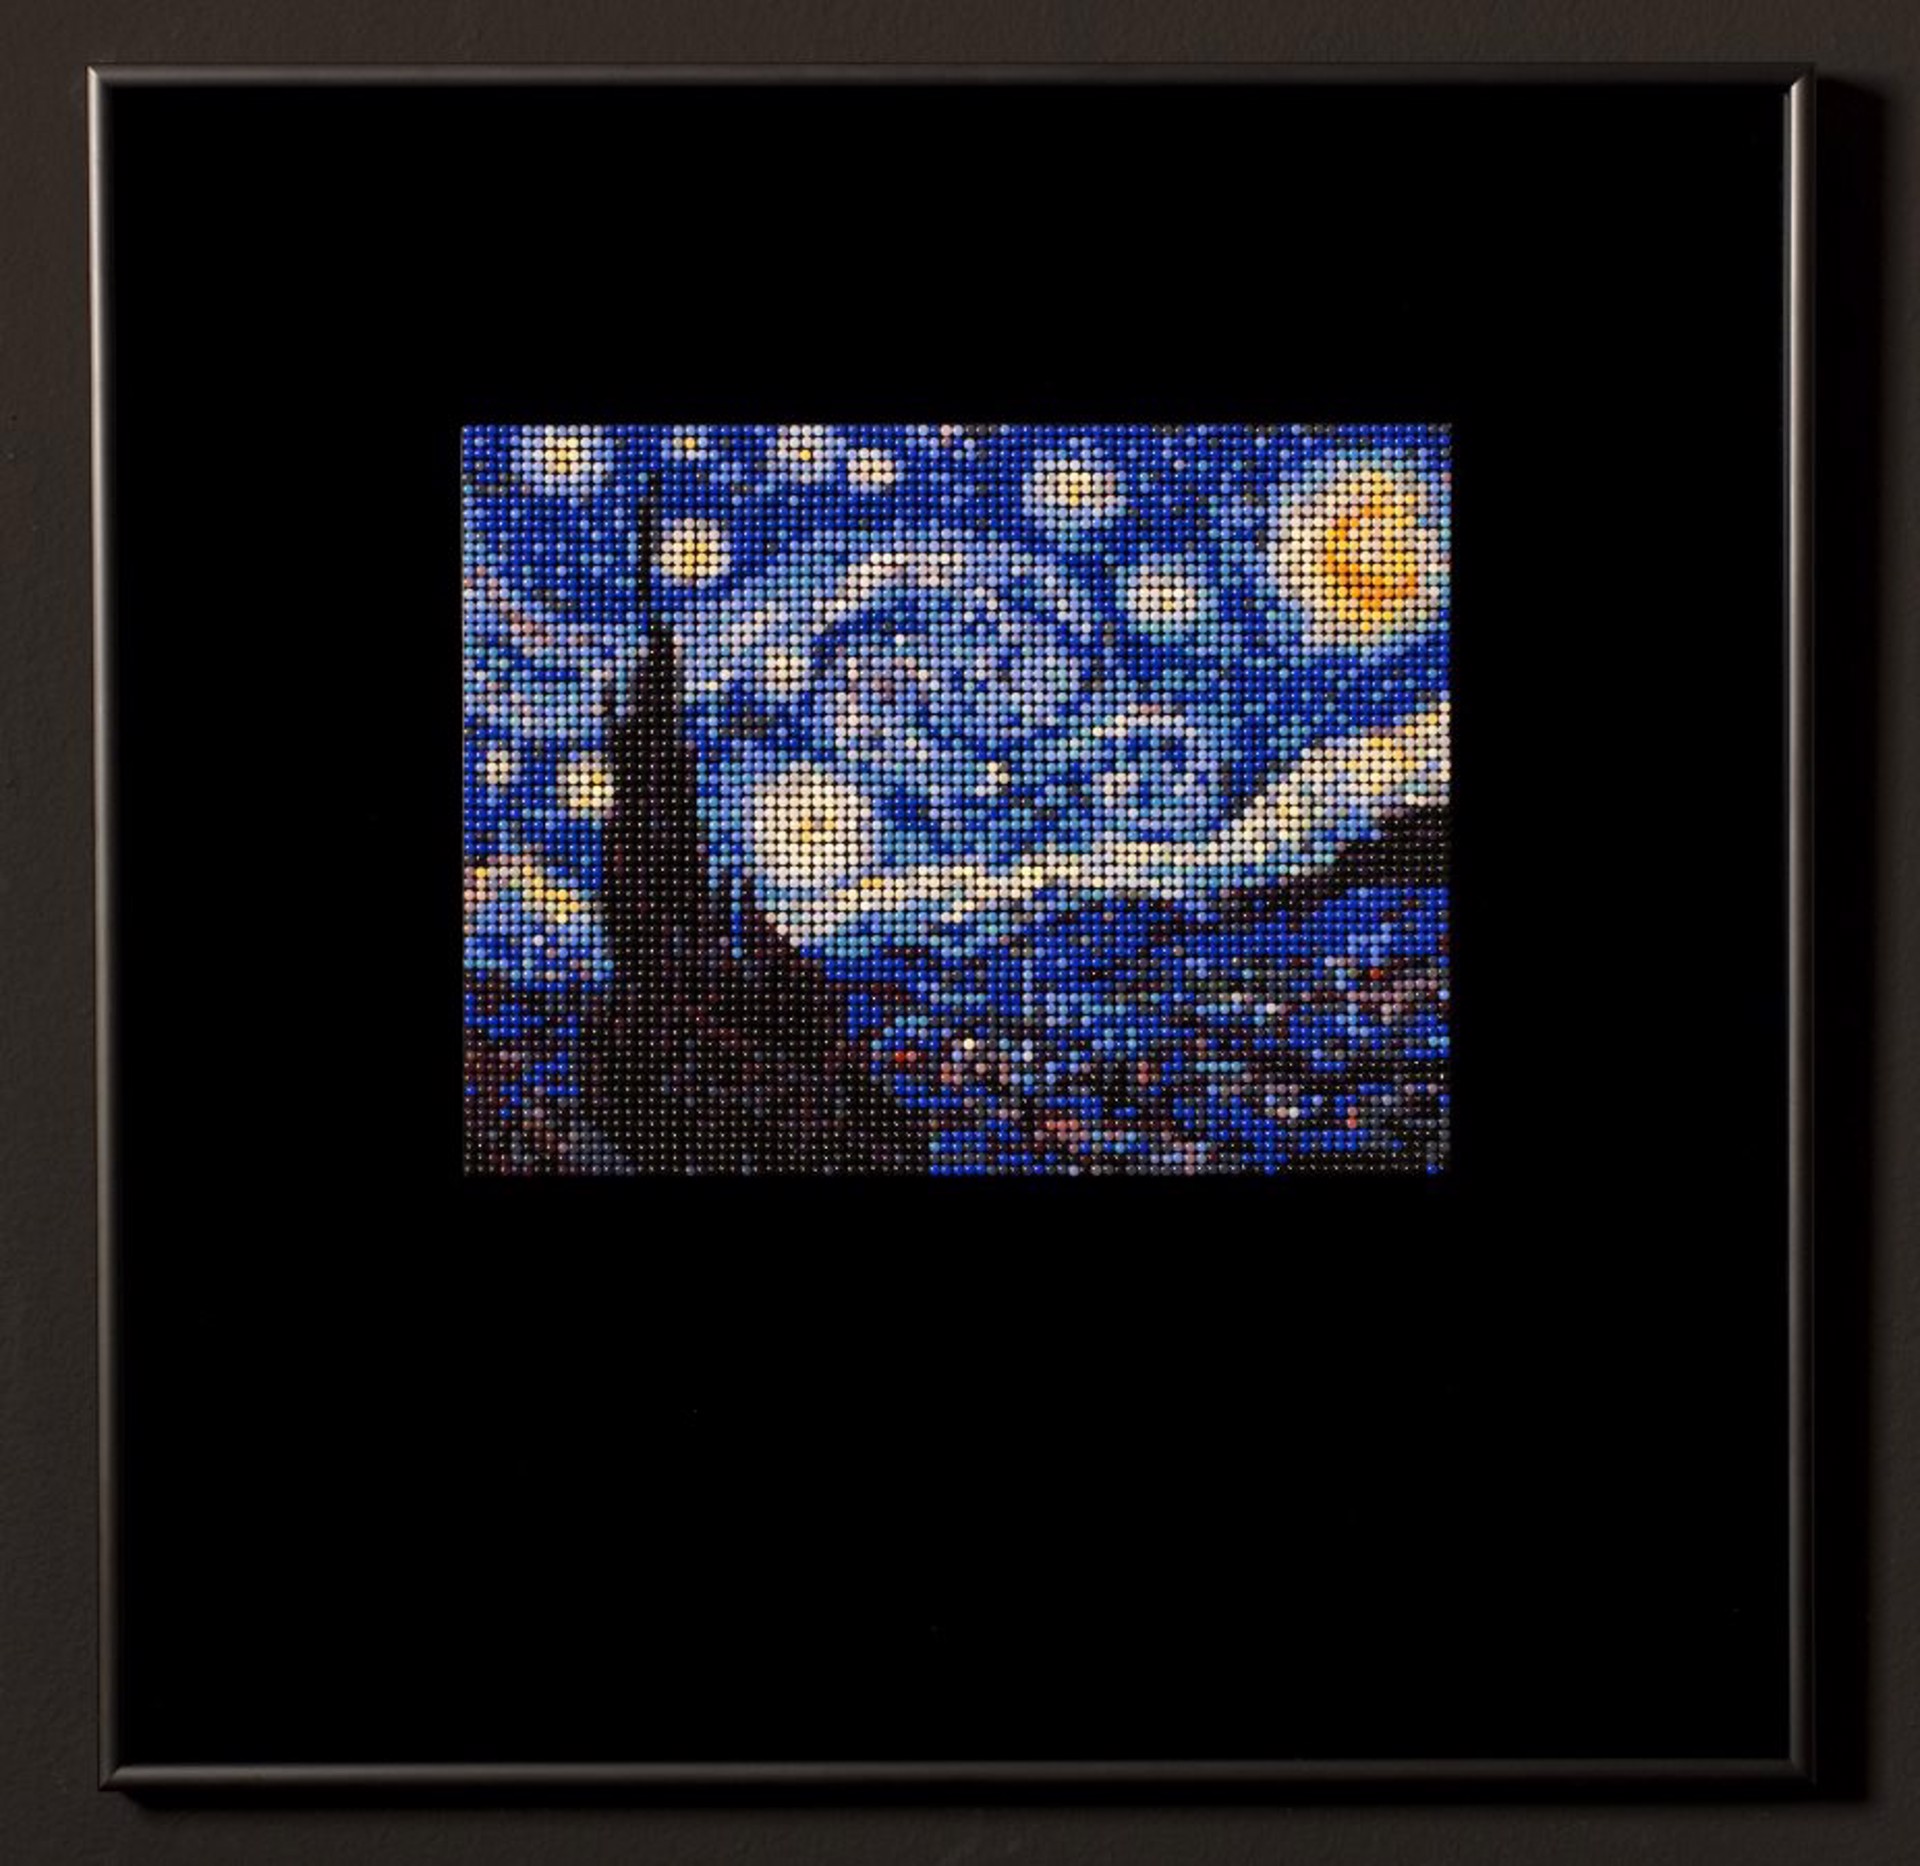 Starry Night, 1889, After Van Gogh by Veruska Vagen